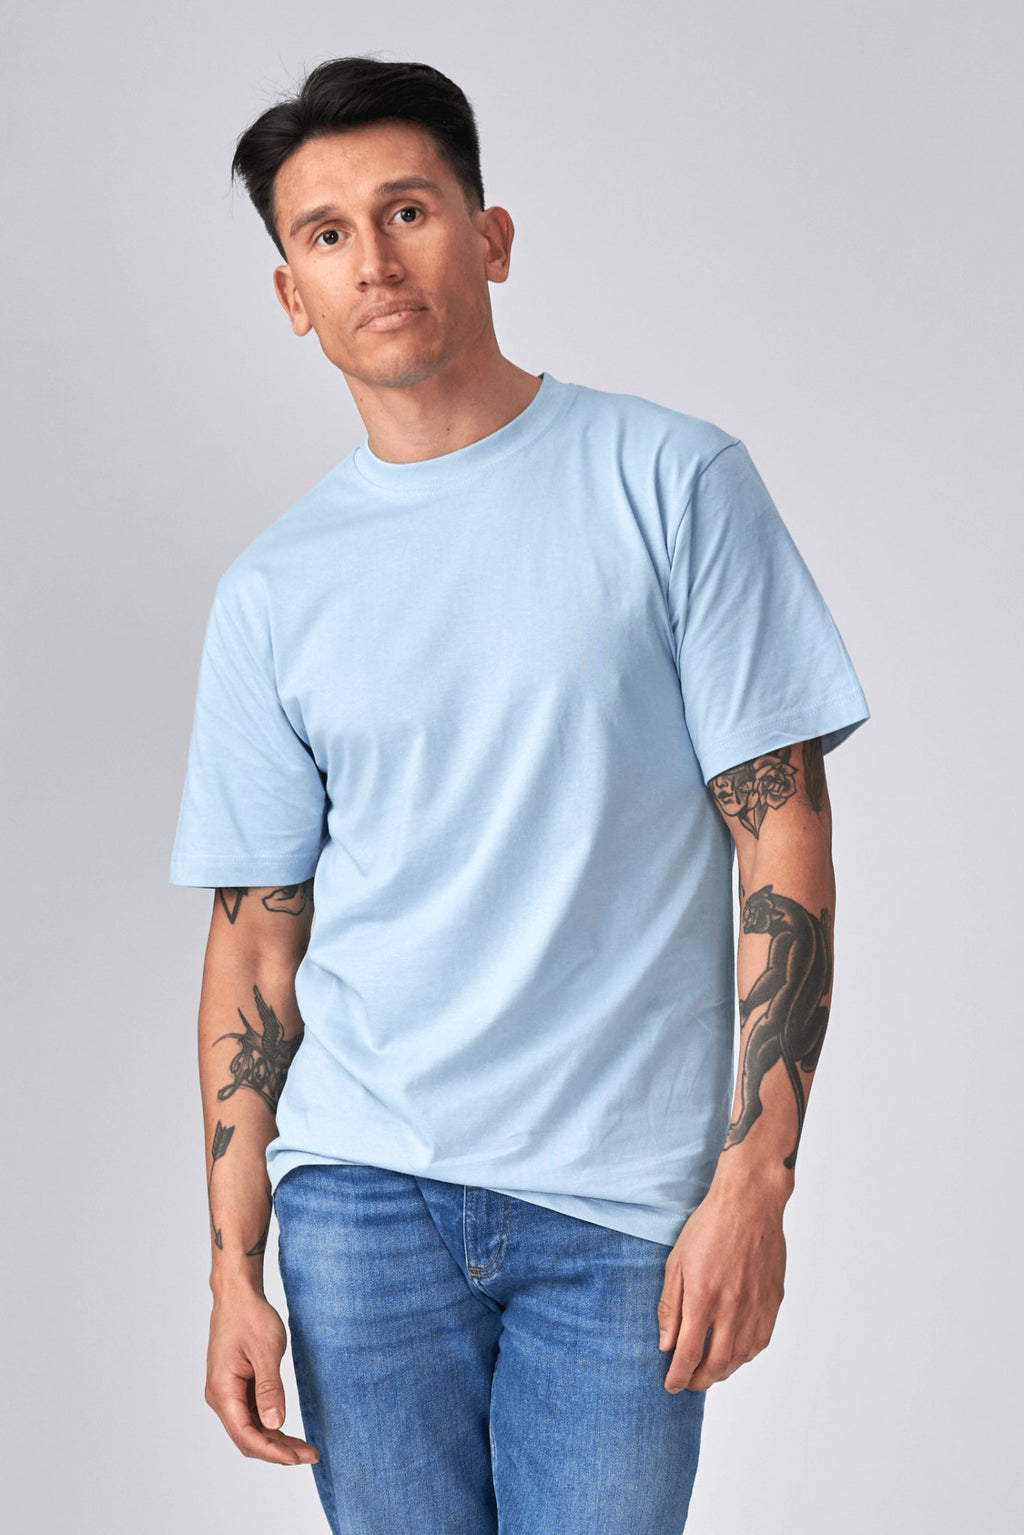 Υπερμεγέθη μπλουζάκι - ανοιχτό μπλε